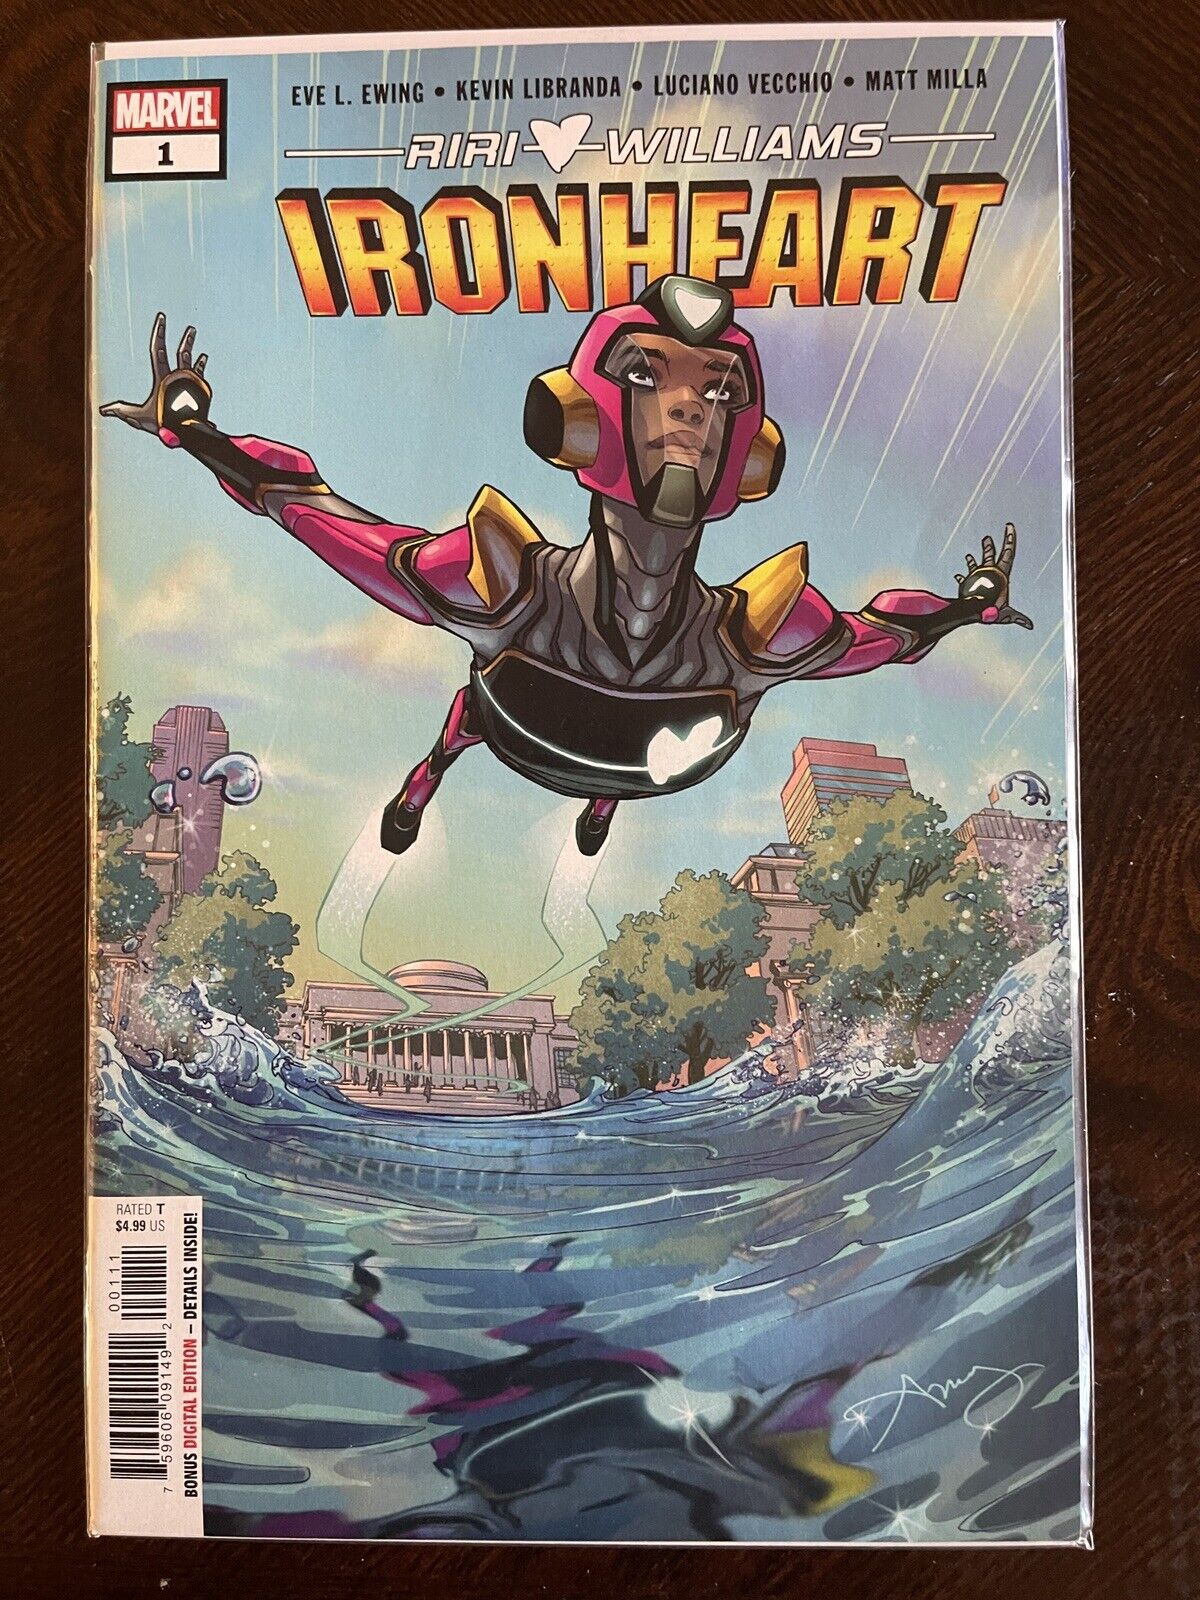 Ironheart #1 (Marvel Comics January 2019) Key issue